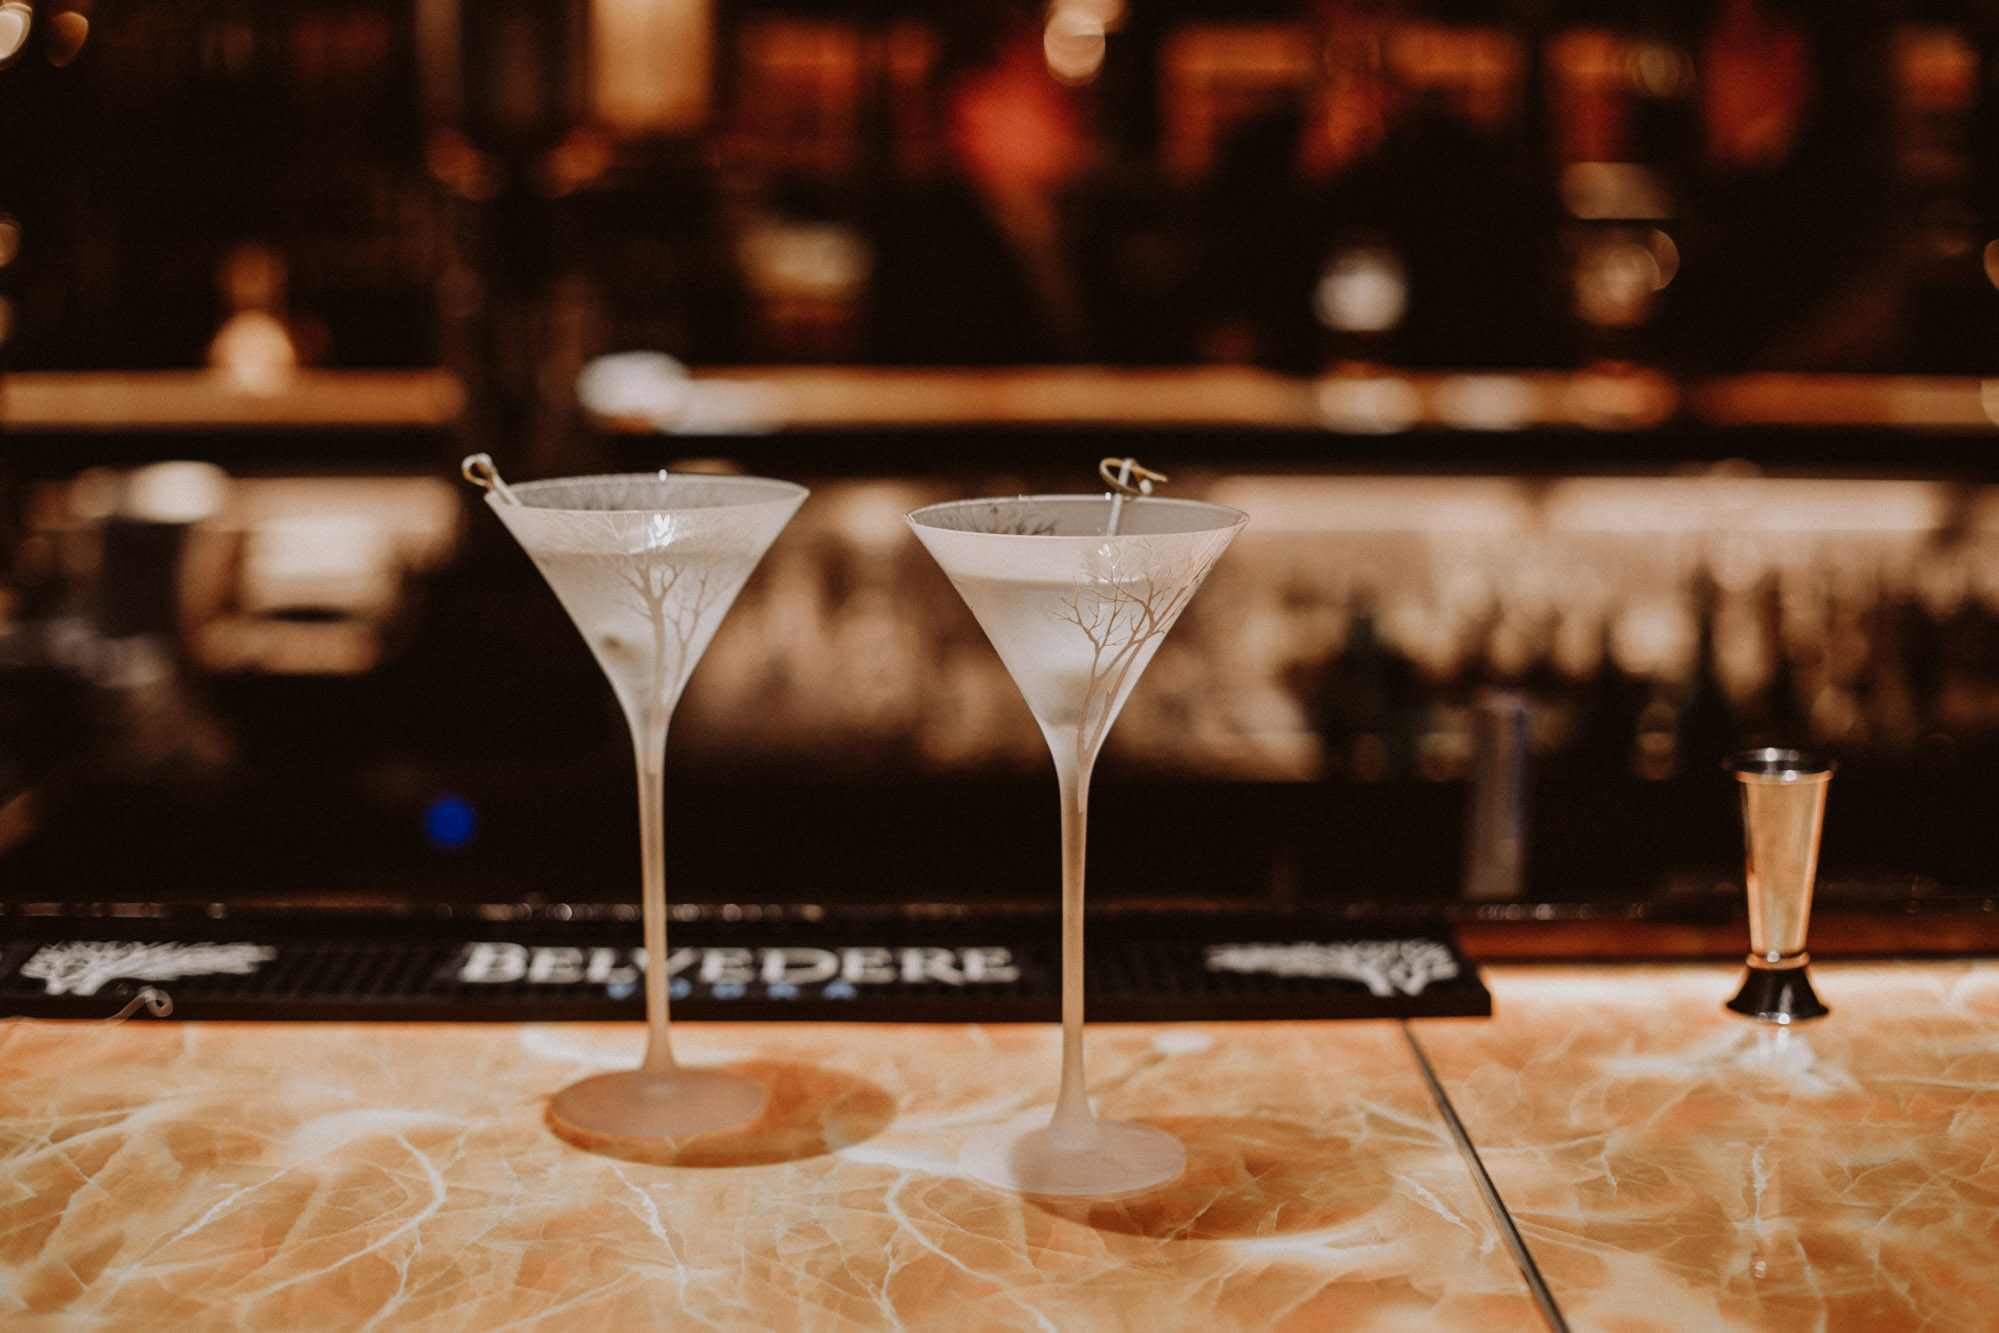 Belvedere 007 Martini | The Daily Dose